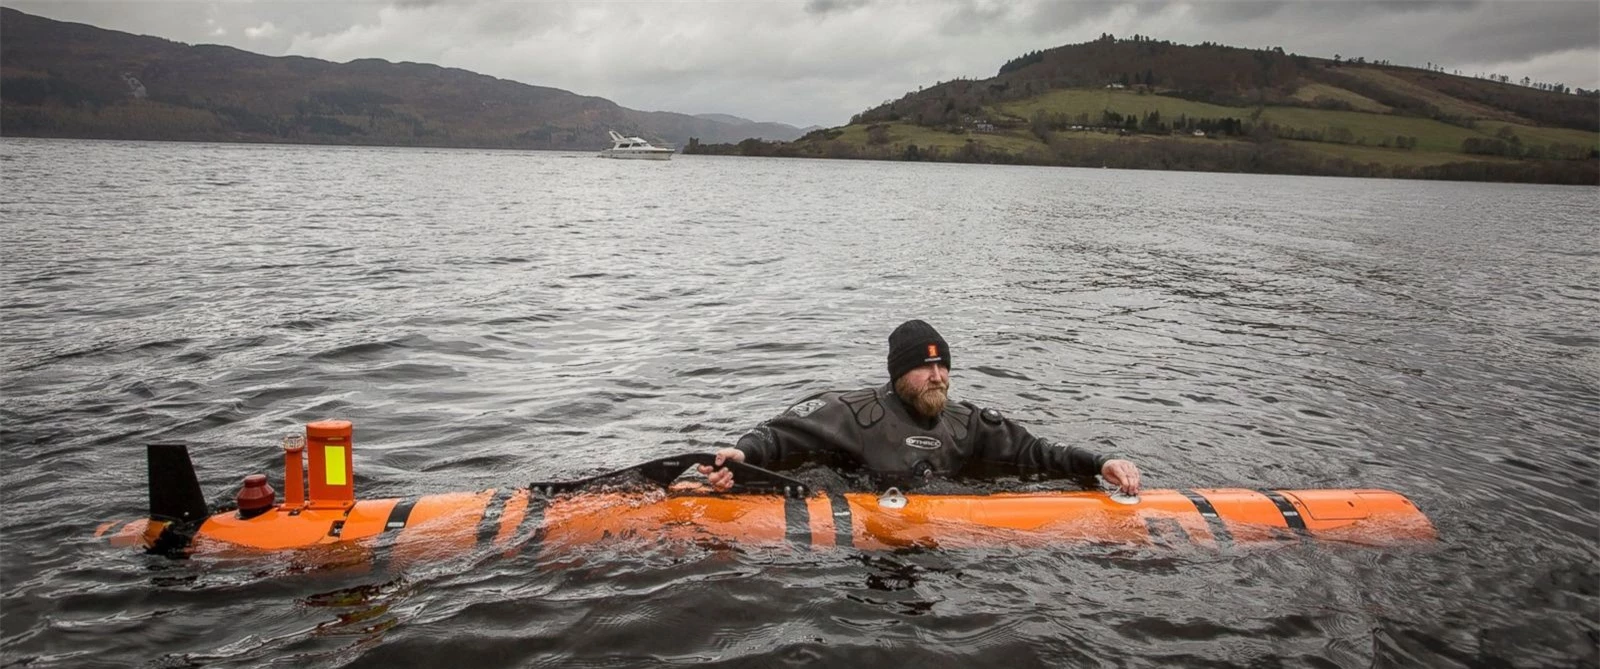 Phát hiện 'quái vật Loch Ness' dưới đáy hồ ở Scotland ảnh 2